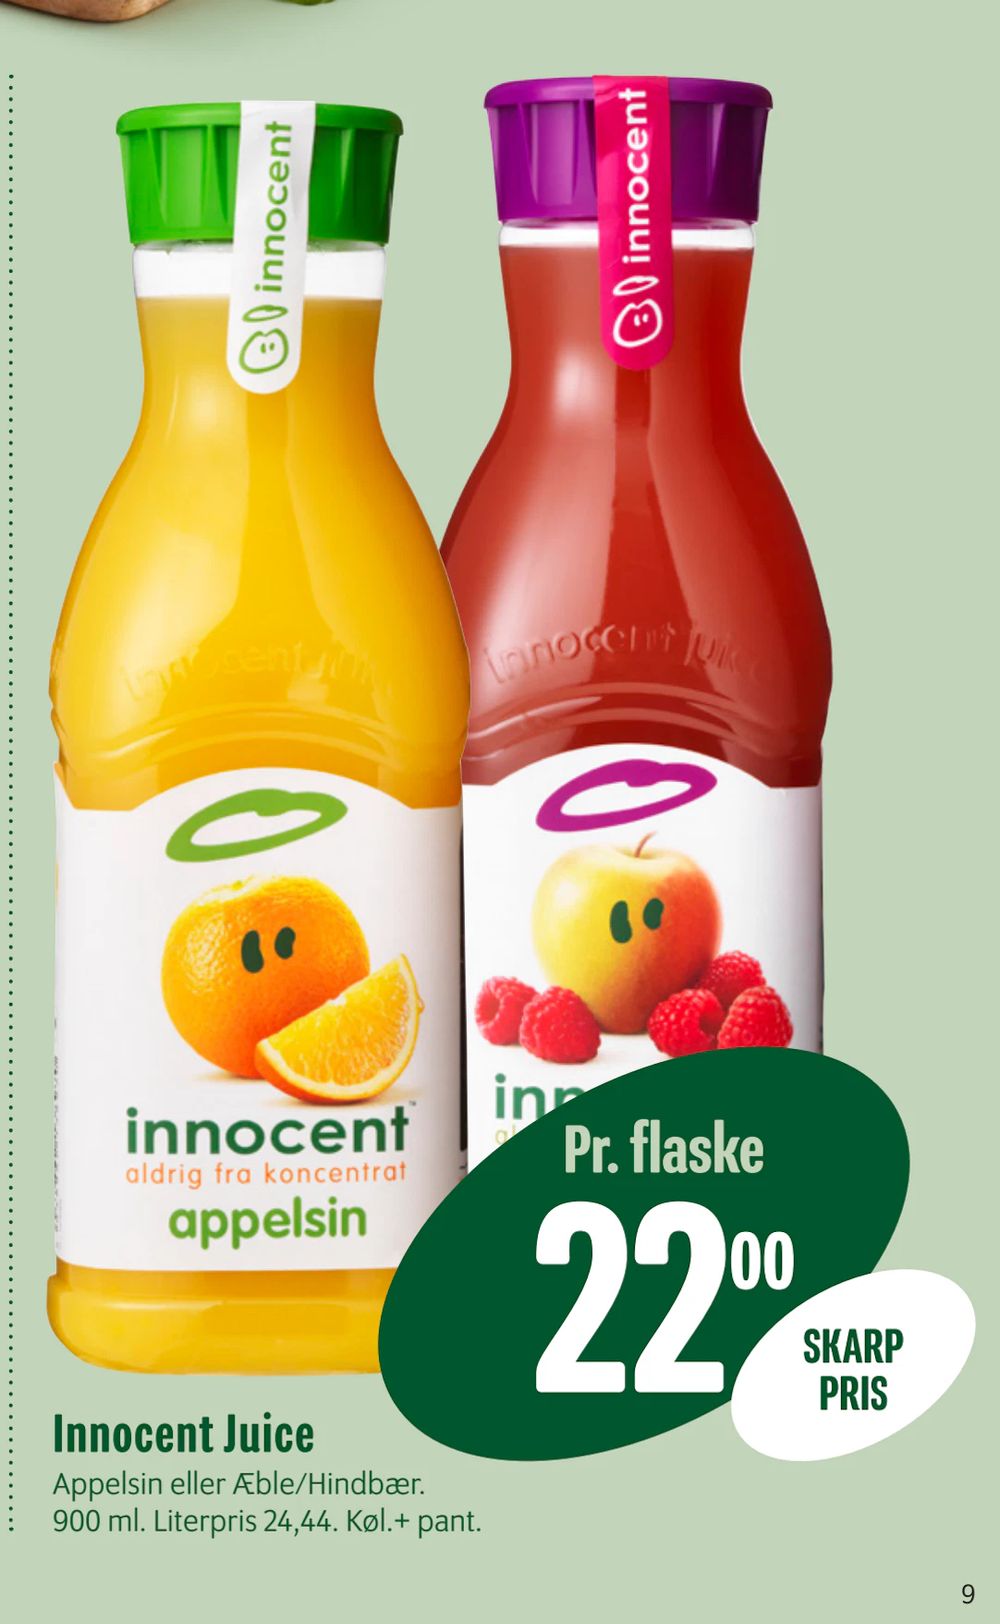 Tilbud på Innocent Juice fra Min Købmand til 22 kr.